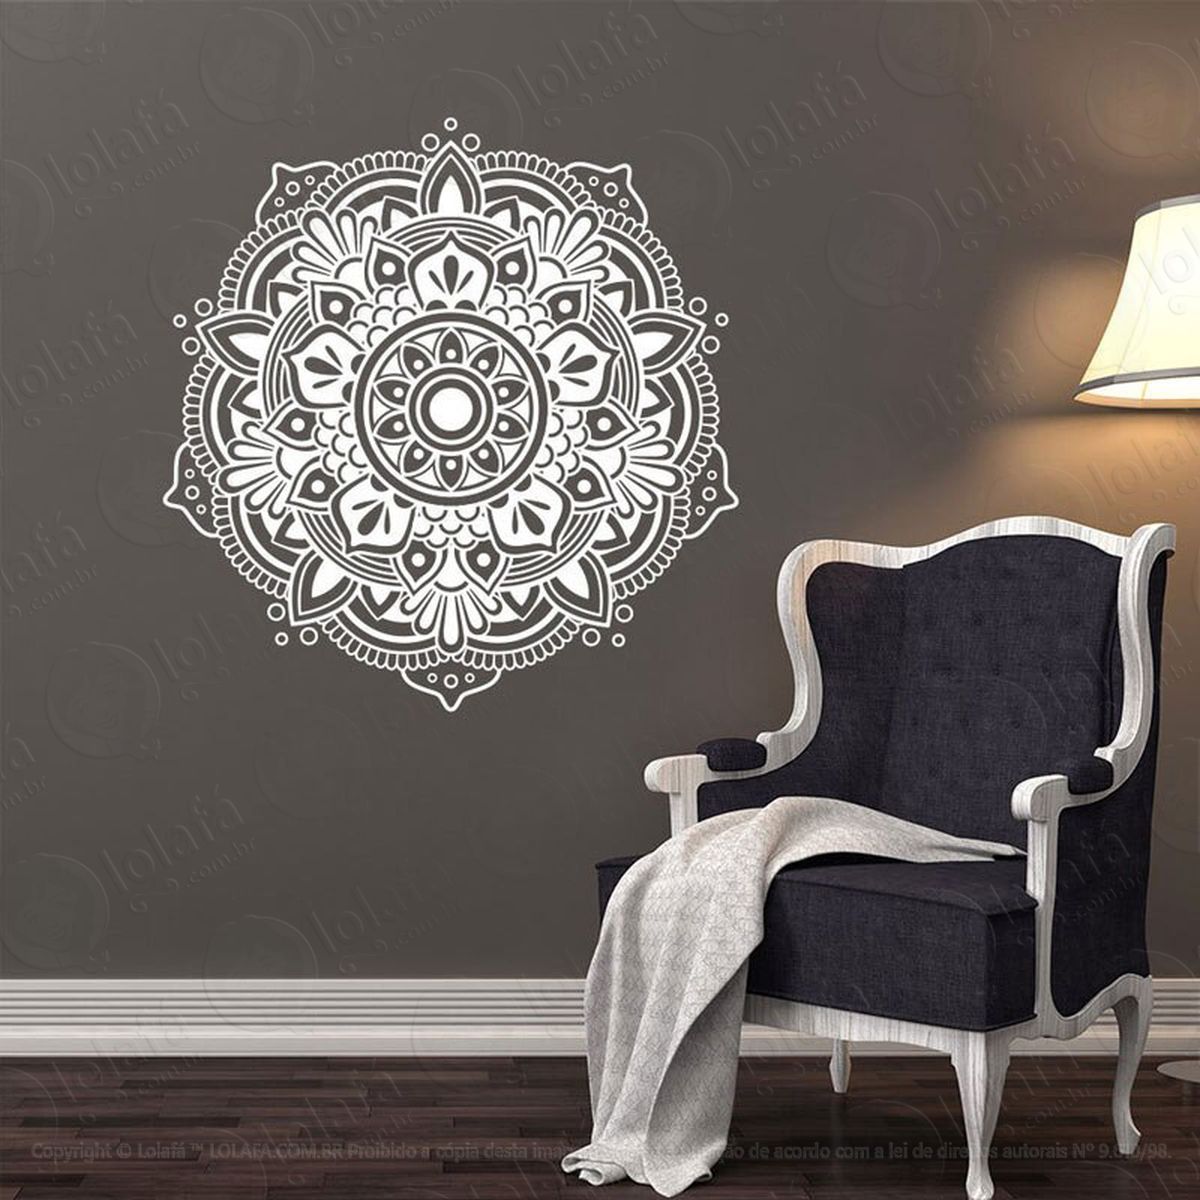 mandala da paz adesivo de parede decorativo para casa, quarto, sala e vidro - mod:571